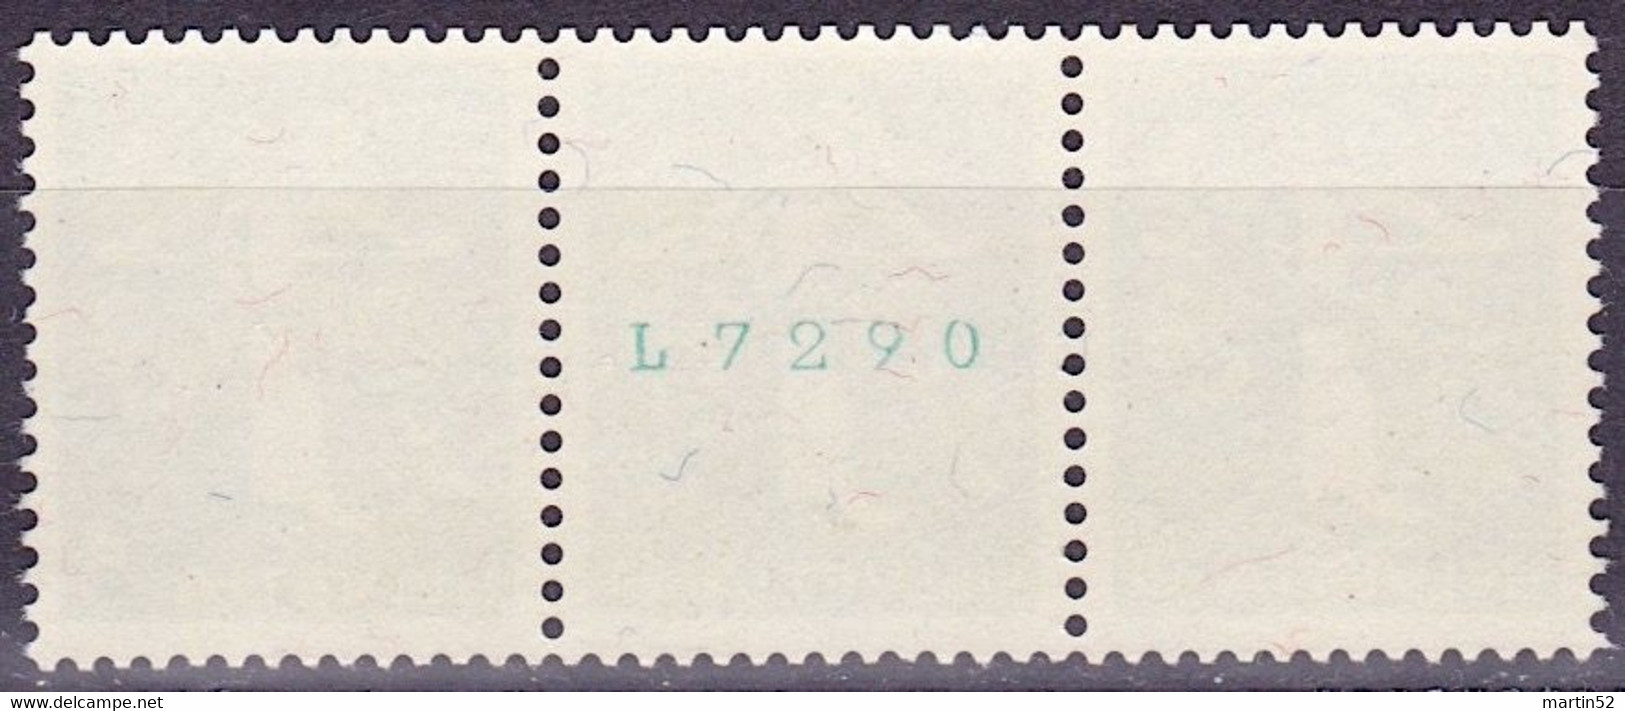 Schweiz Suisse 1939: Zusammendruck Se-tenant Zu Z25b Mi W10 ** Mit Nr. Avec N° L7290 Postfrisch MNH (Zumstein CHF 21.00) - Franqueo